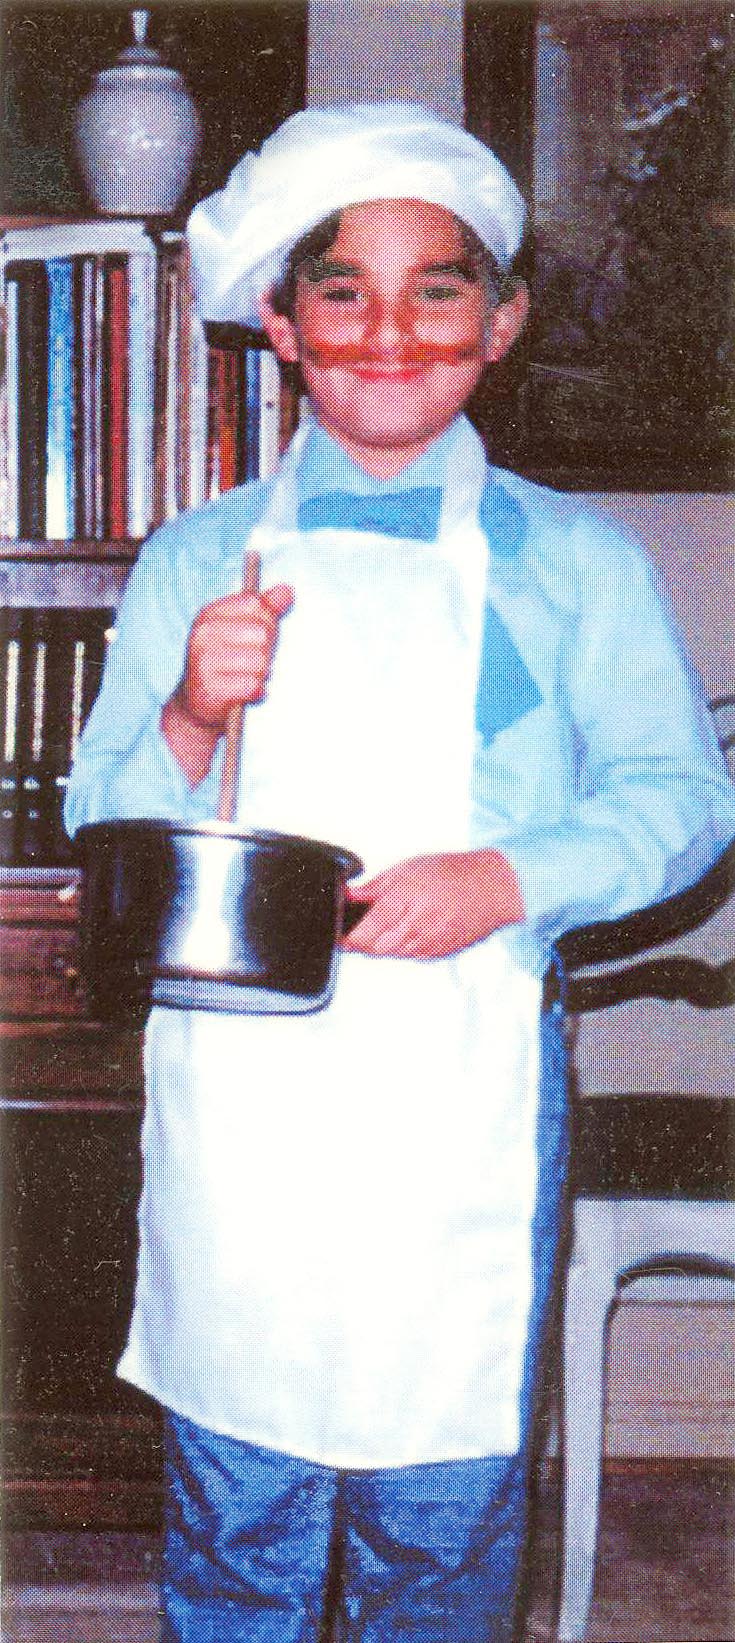 Swedish Chef, Age 8